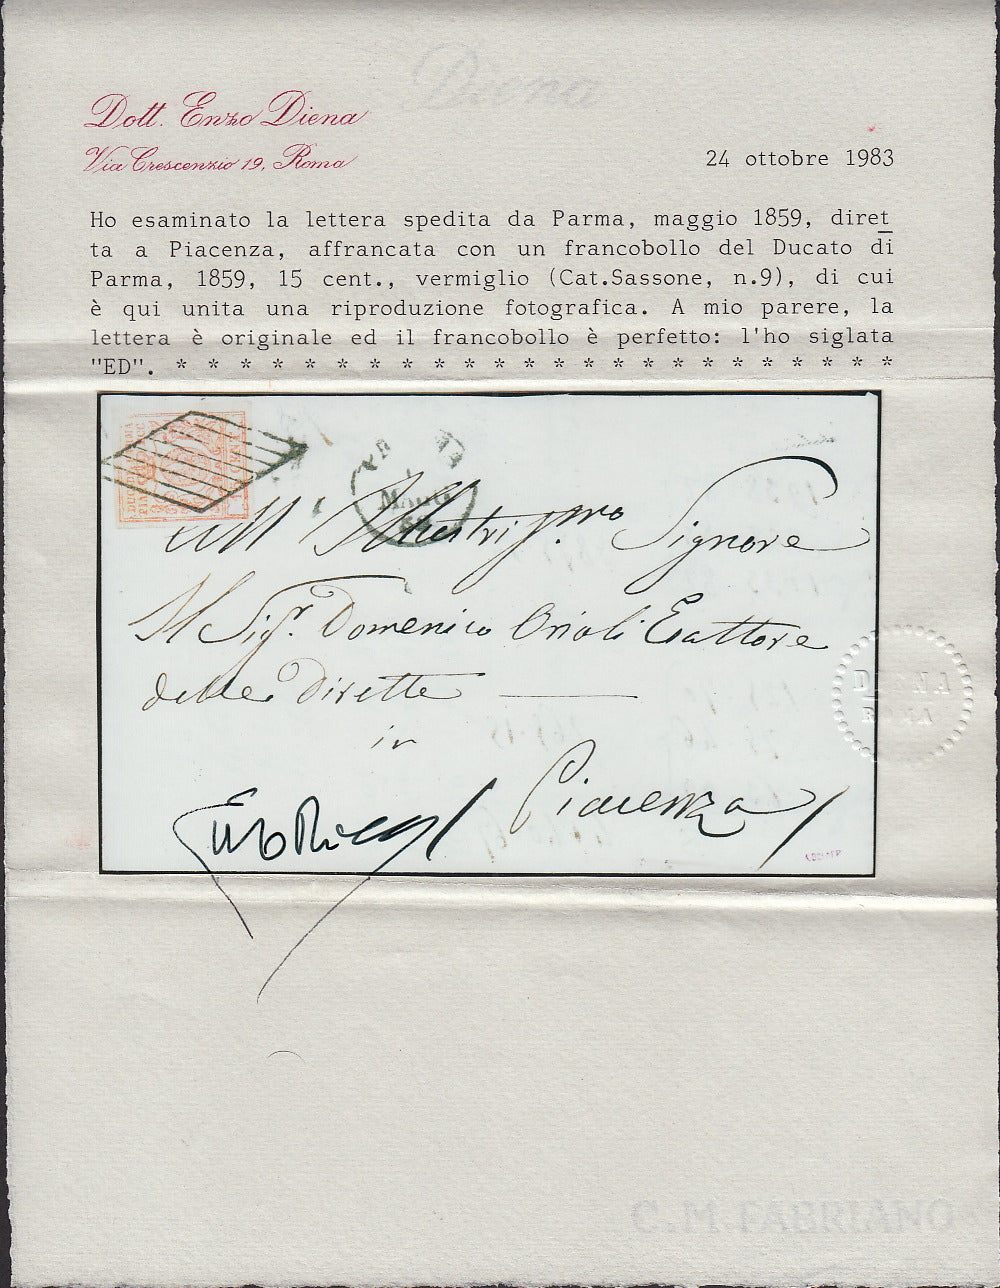 PARSP20 - 1859 - Governo Provvisorio di Parma II periodo, III emissione c. 15 vermiglio spedito da Parma per Piacenza 19/5/59 (9)